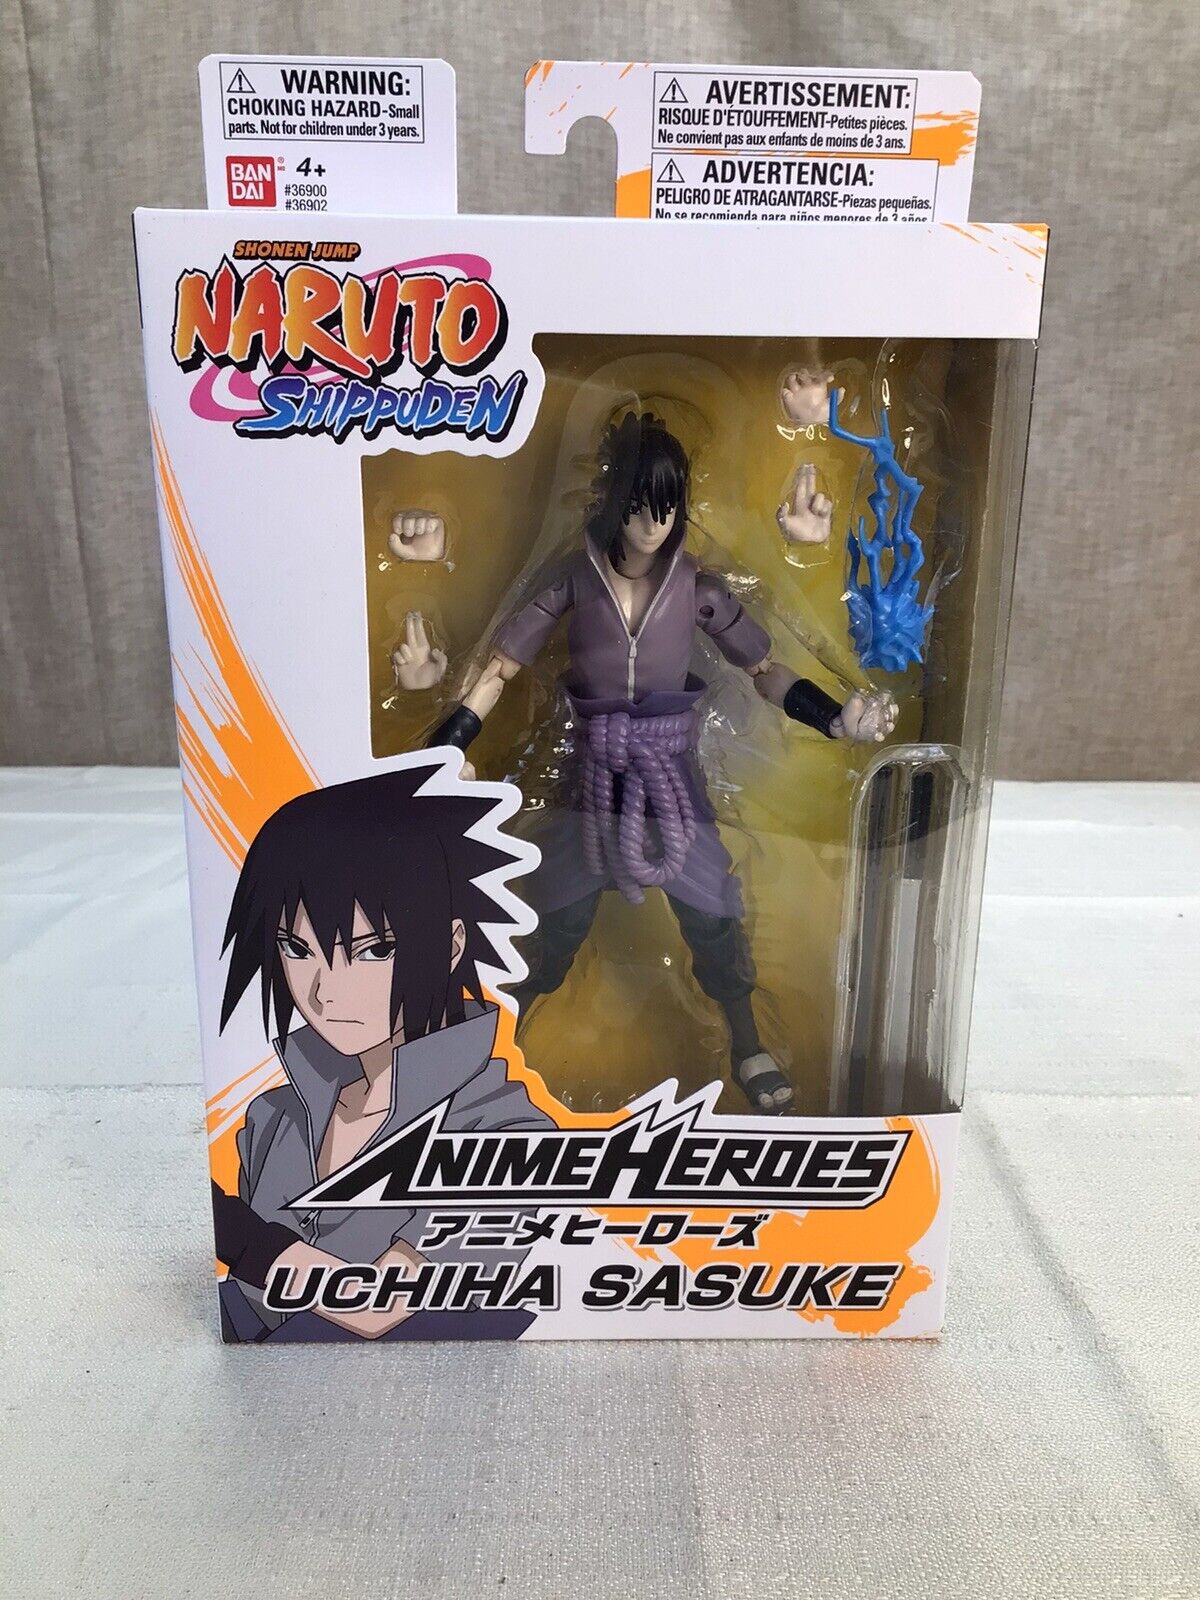 Naruto Shippuden Anime Heroes Uchiha Sasuke Action Figure New In Box